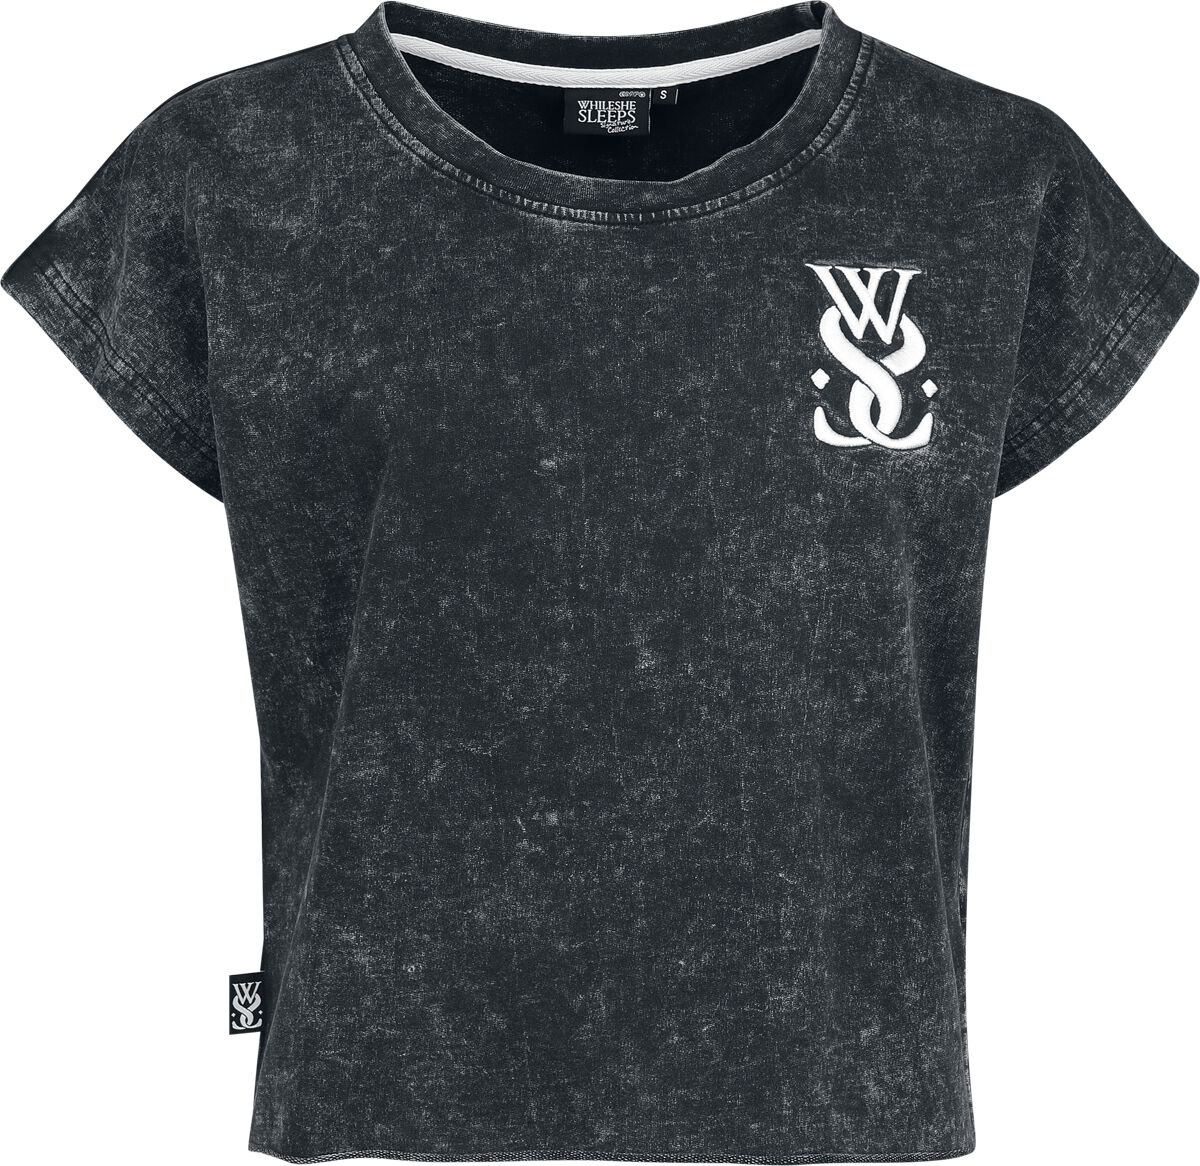 While She Sleeps T-Shirt - EMP Signature Collection - XS bis 3XL - für Damen - Größe XS - grau  - EMP exklusives Merchandise!